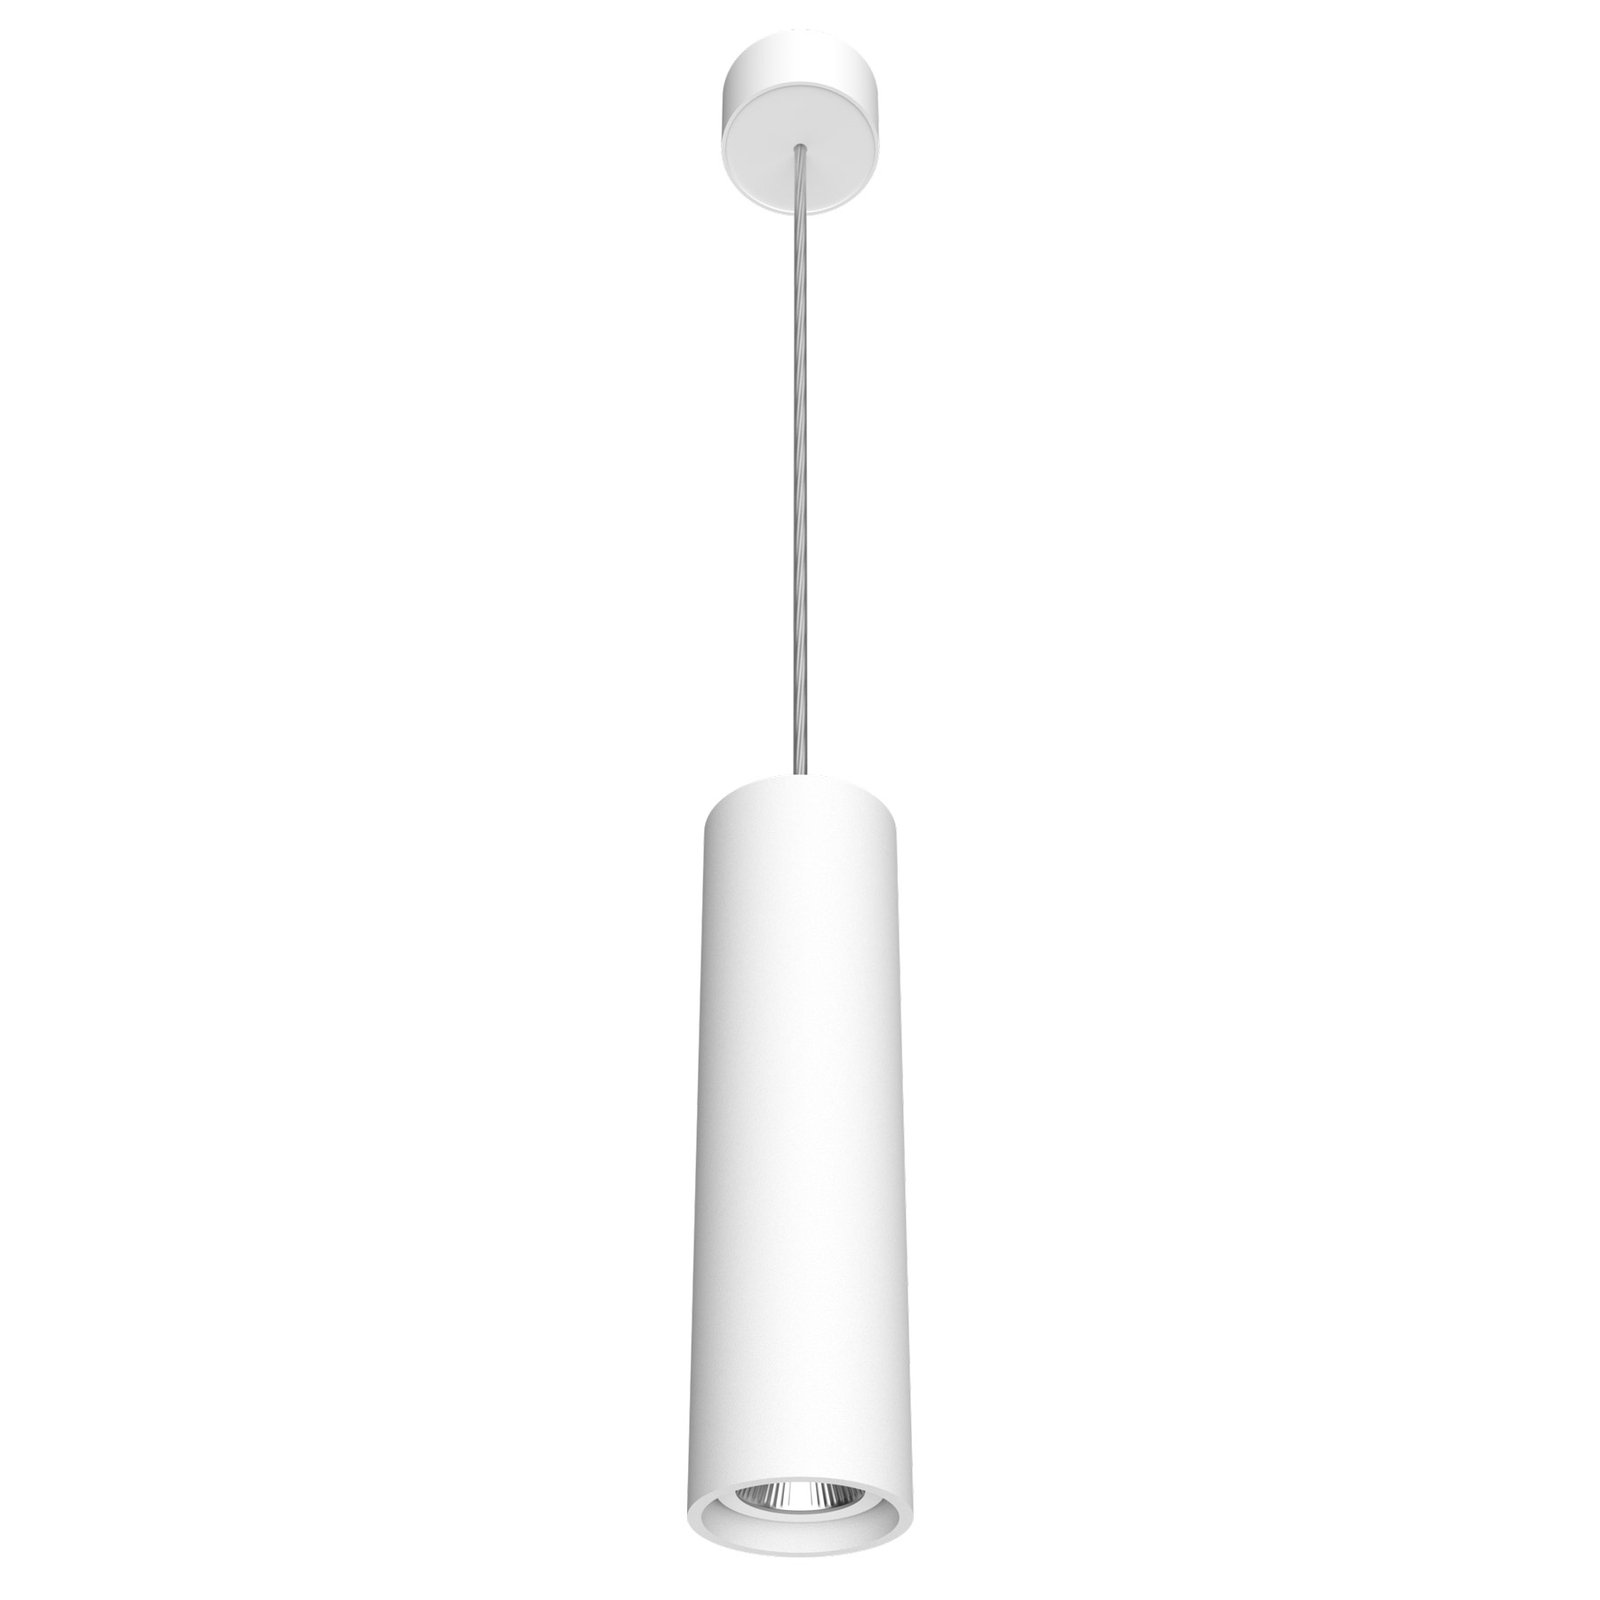 LED pakabukas "Fuzzy" Ø8cm 15W 830 baltos spalvos paviršinis baldakimas